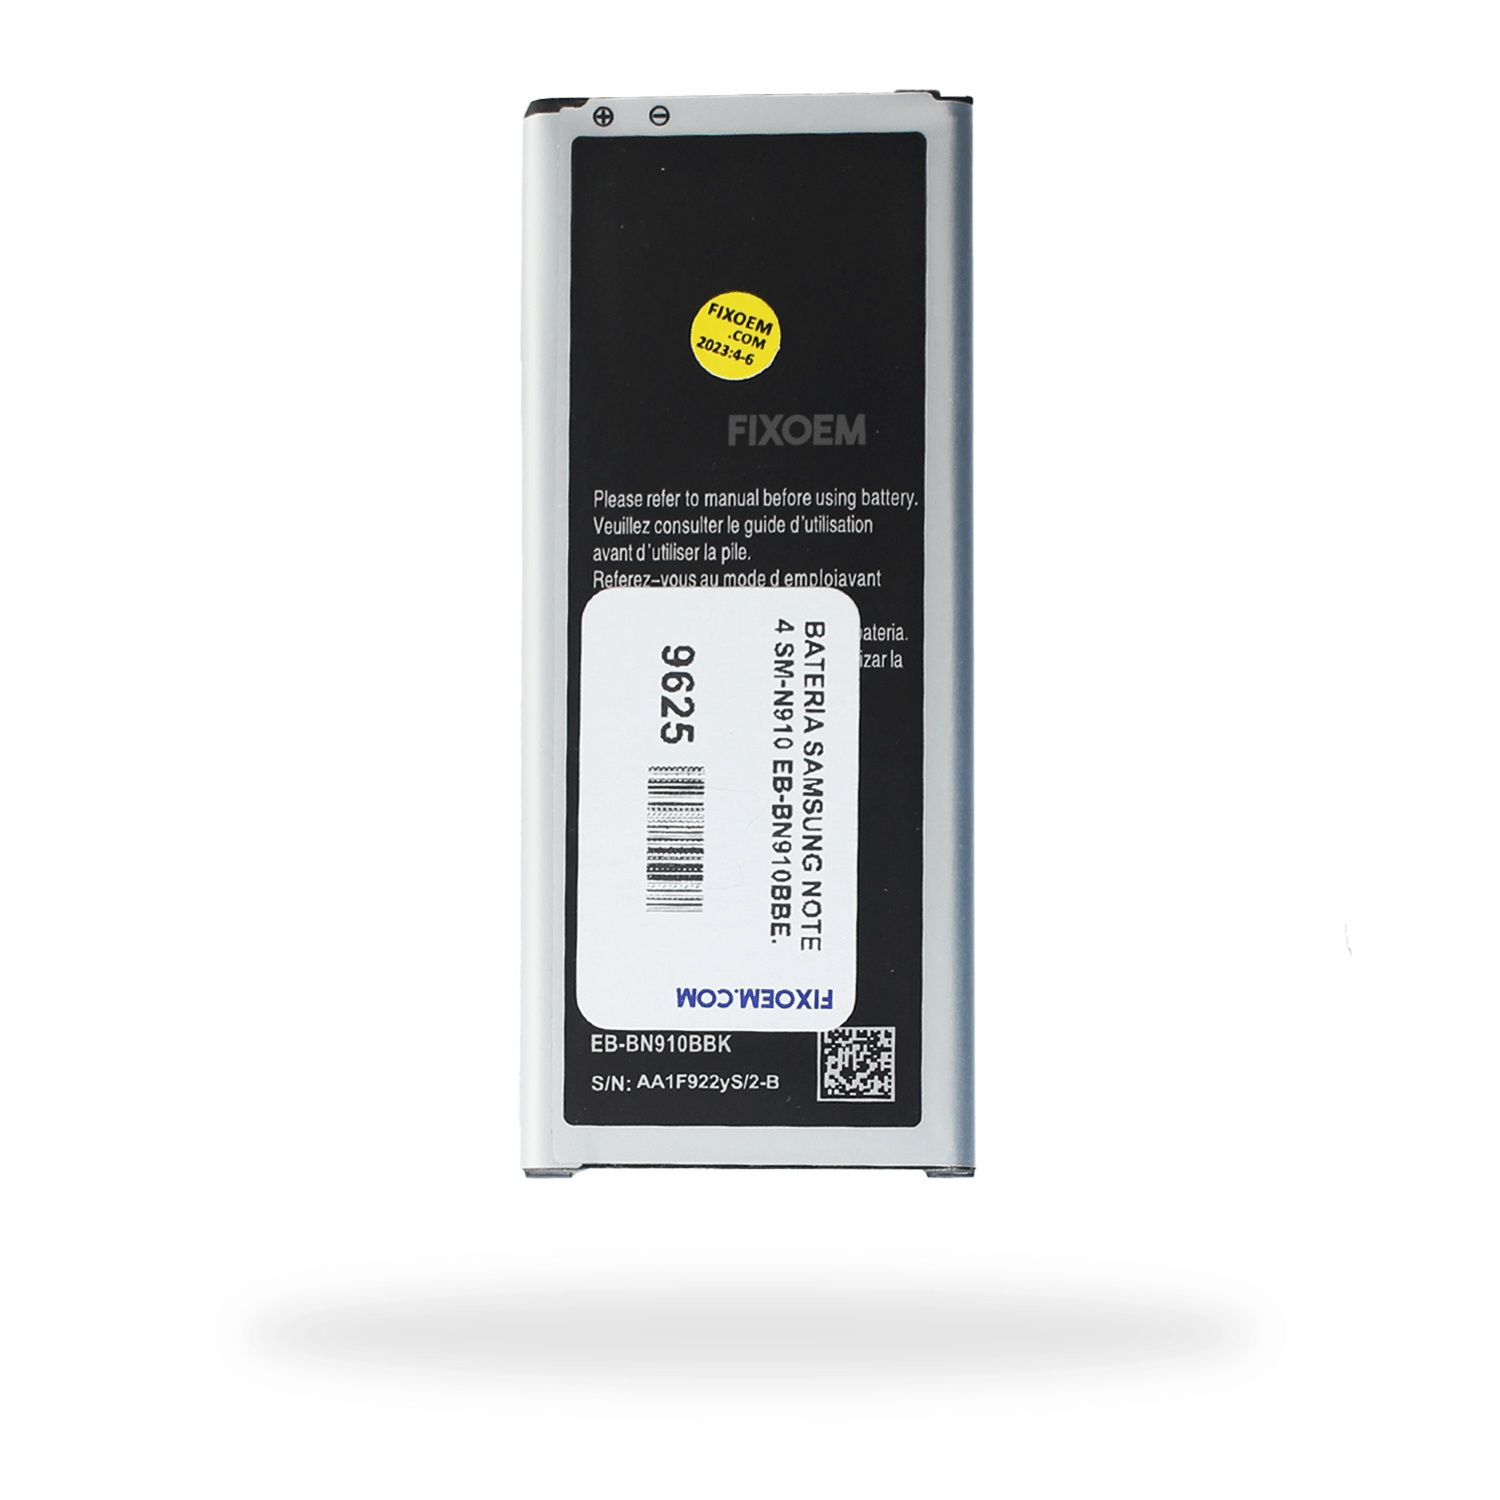 Bateria Samsung Note 4 Sm-N910 Eb-Bn910Bbe |+2,000 reseñas 4.8/5 ⭐